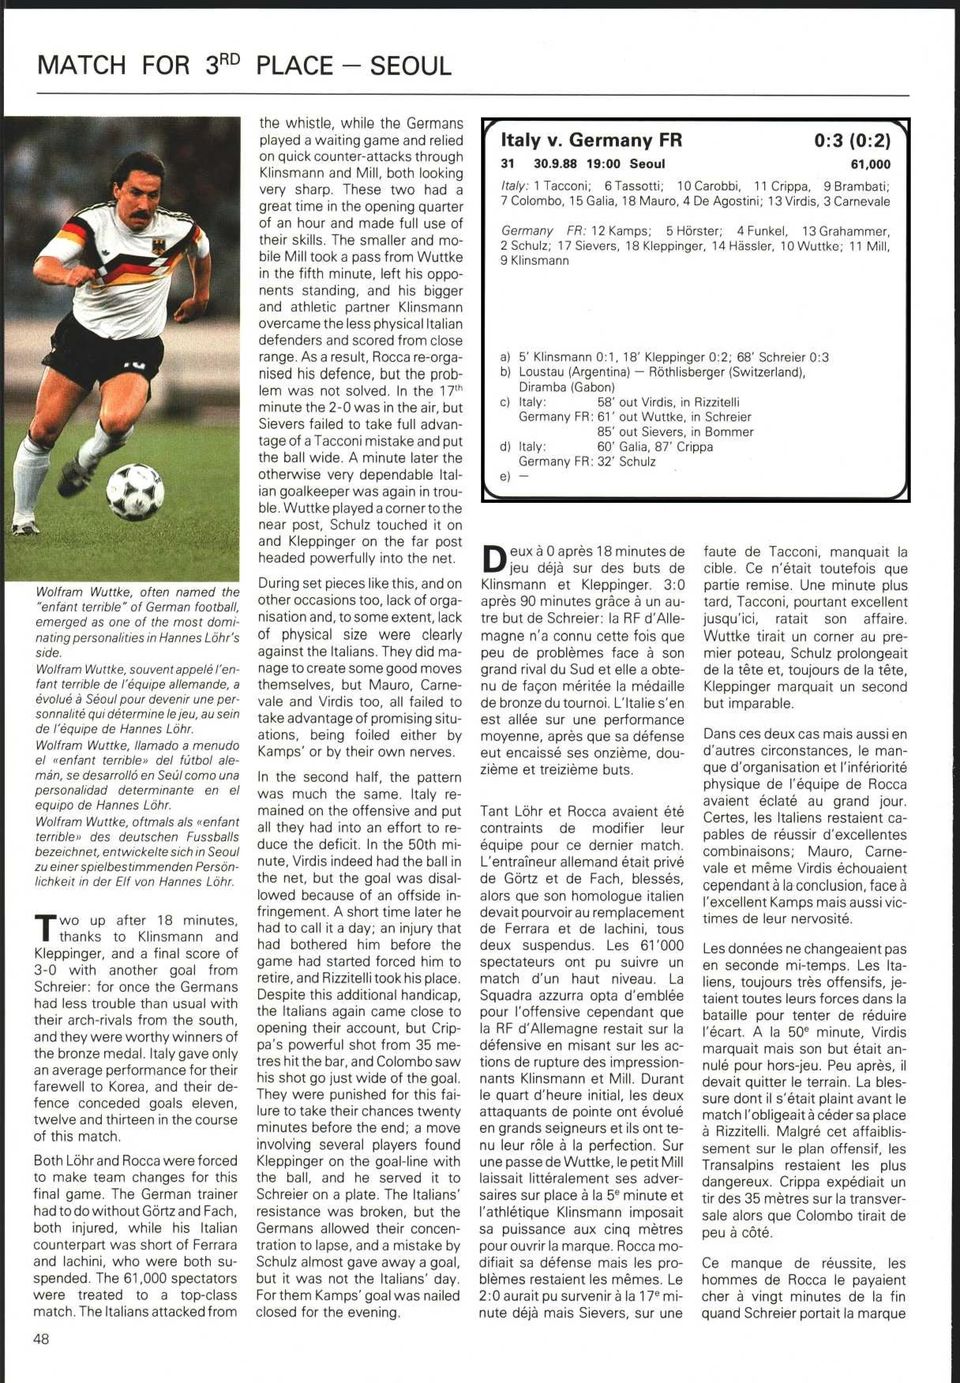 «enfant terrible» del fútbol alemán, se desarrolló en Seúl como una personalidad determinante en el equipo de Hannes Löhr Wolfram Wuttke, oftmals als «enfant terrible» des deutschen Fussballs